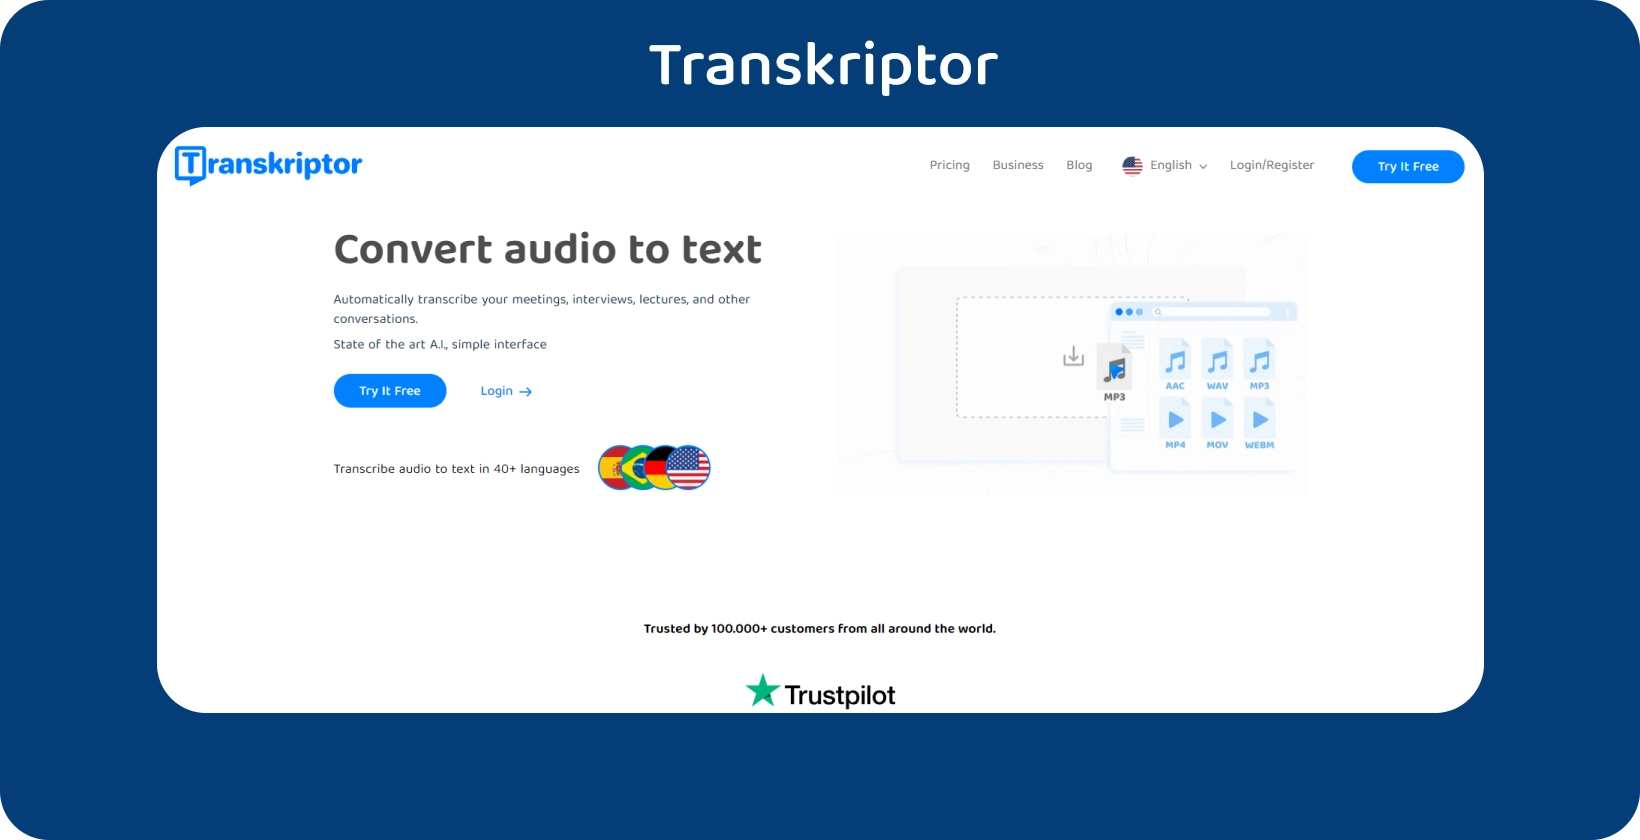 Transkriptor mājaslapu ar skaidru aicinājumu uz darbību, piedāvājot audio teksta transkripcijas pakalpojumus.